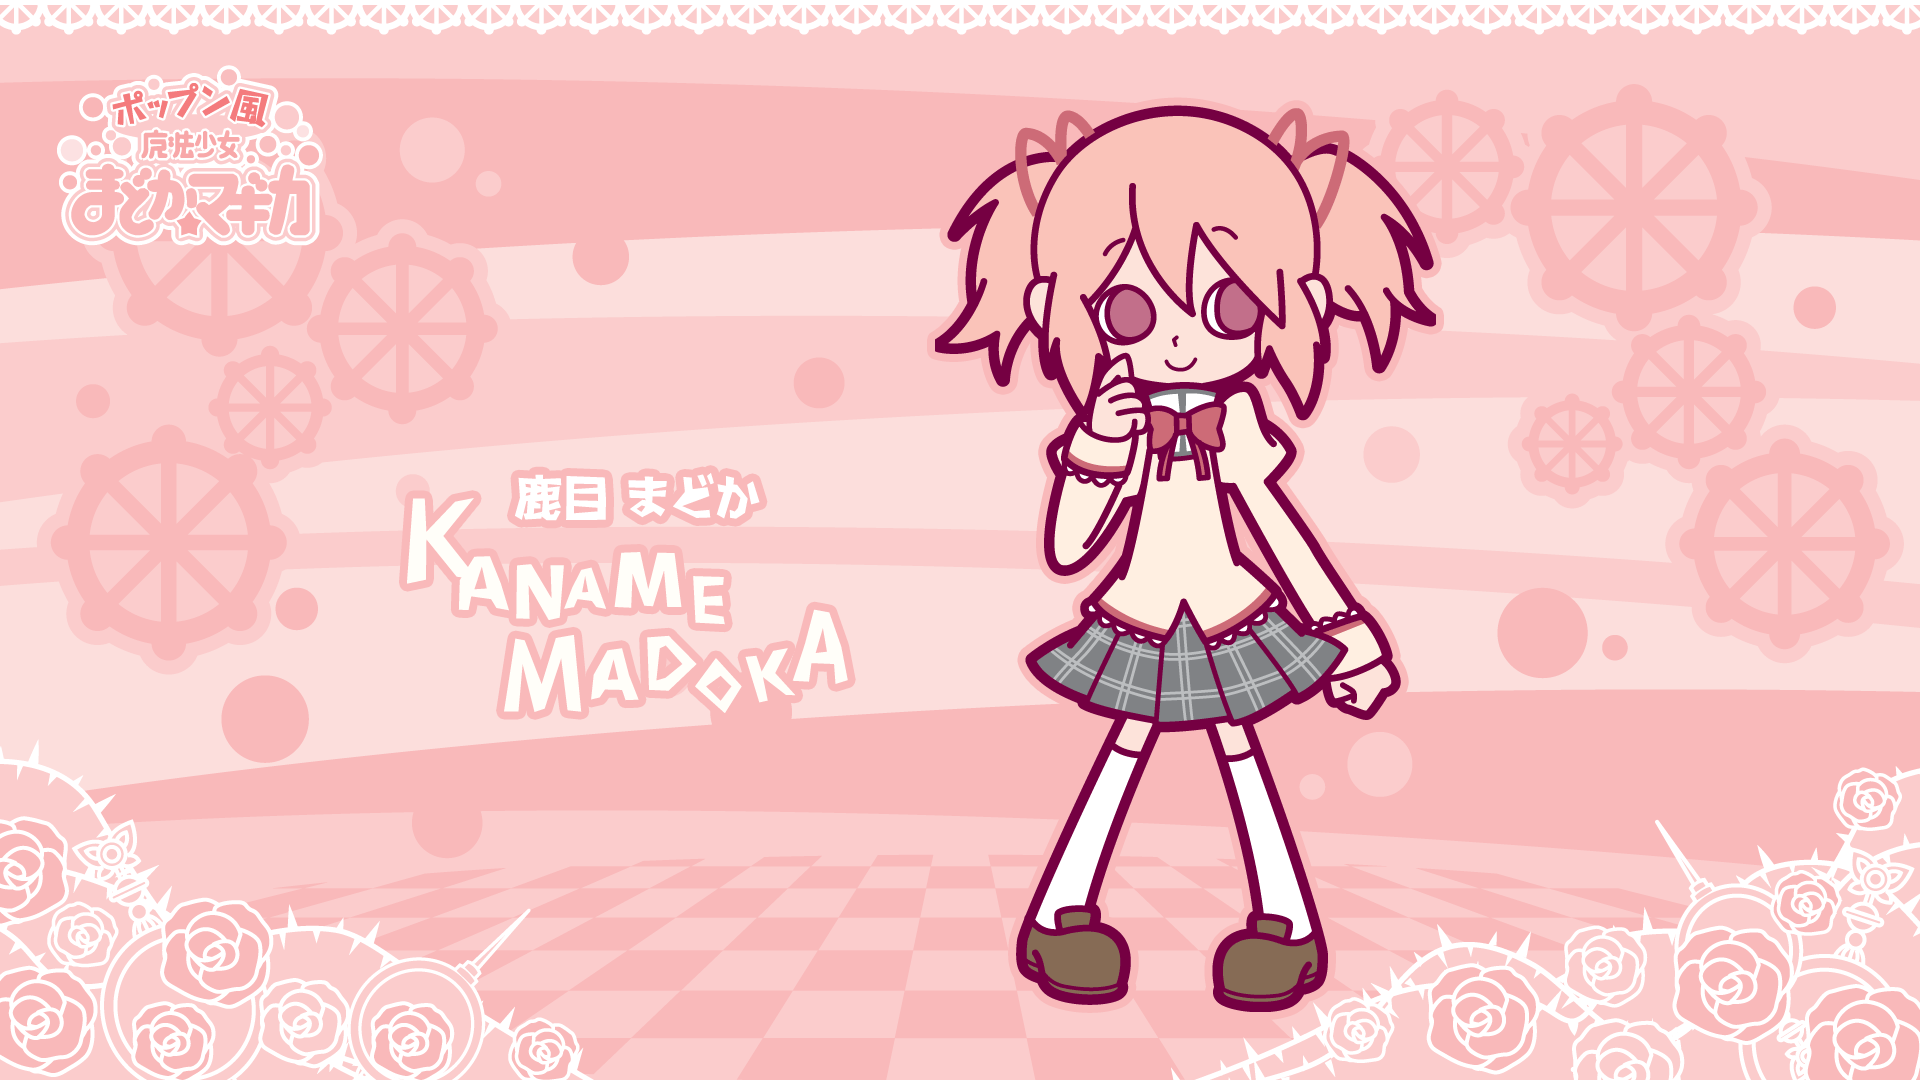 Anime 1920x1080 anime Kaname Madoka Mahou Shoujo Madoka Magica anime girls